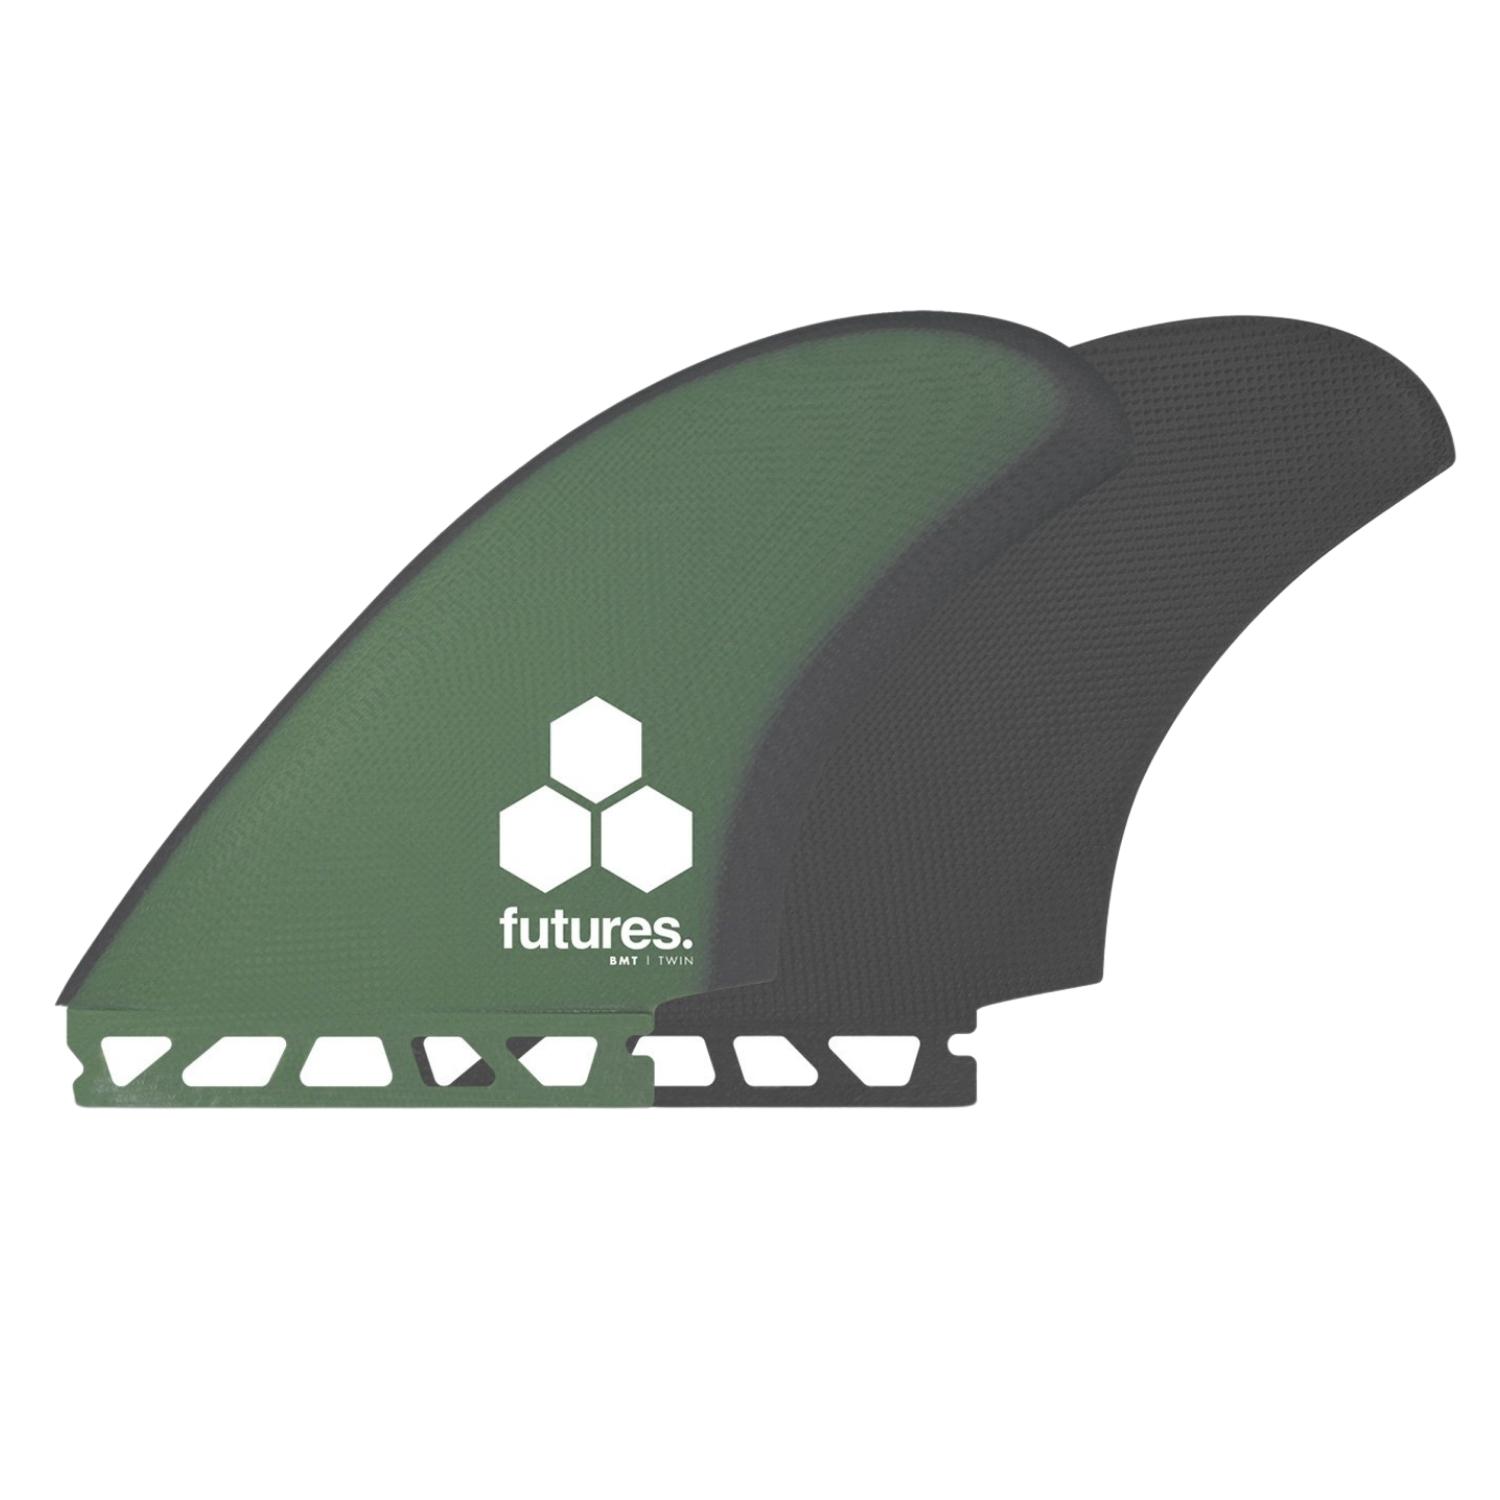 Futures BMT Britt Merrick Twin Surfboard Fins - Green/Grey - Futures Fins by Futures Large Fins